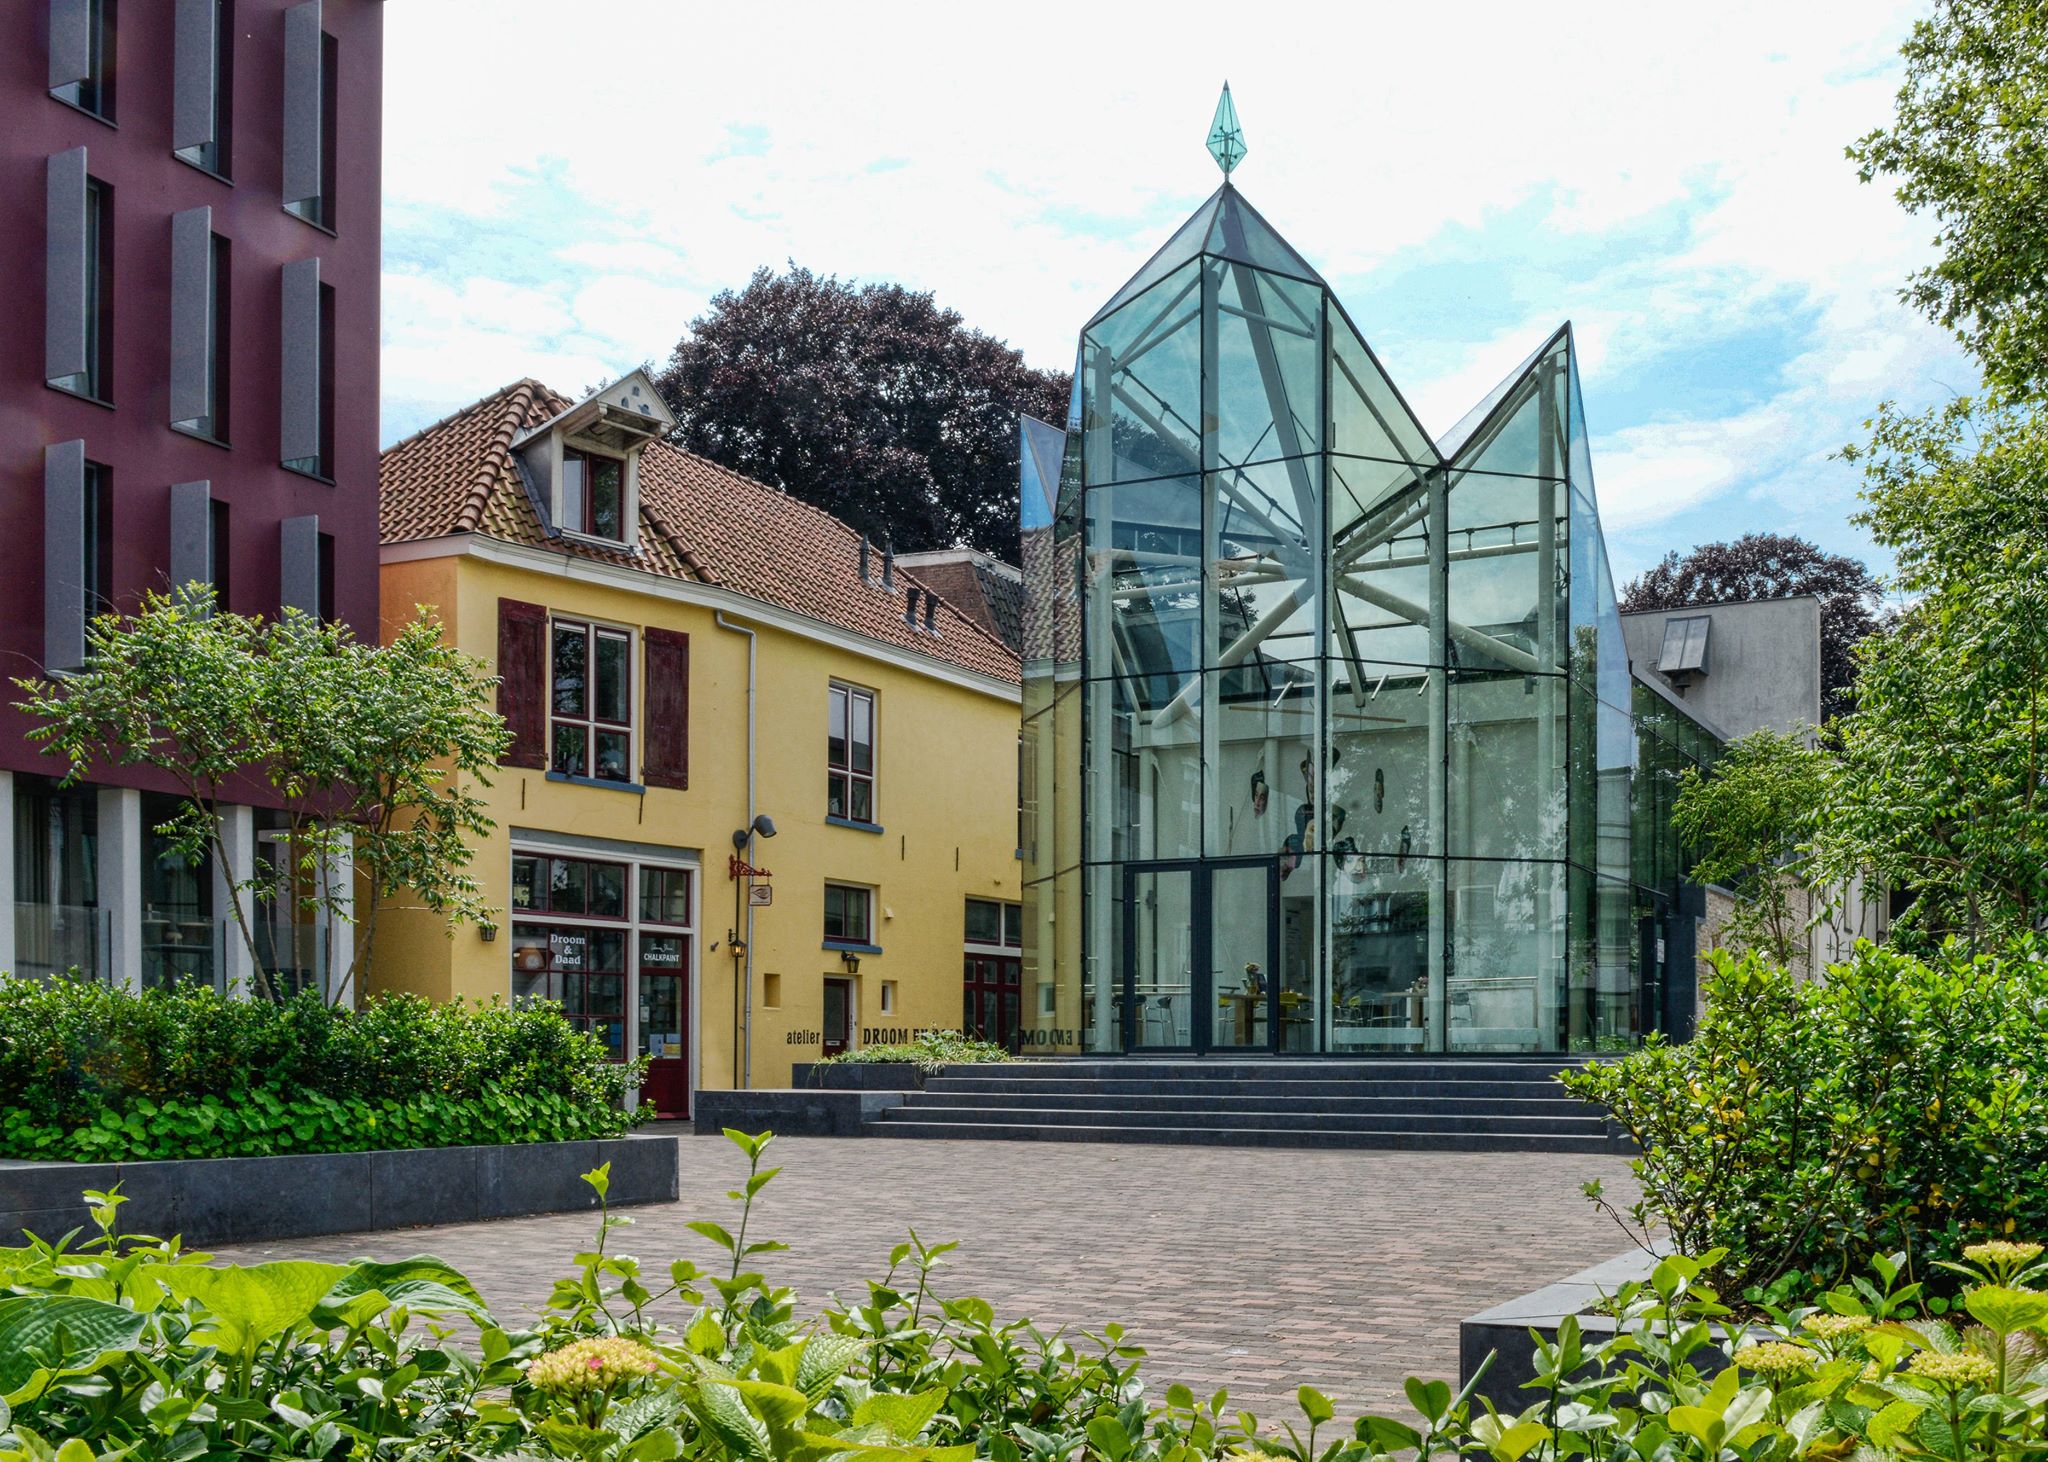 Het Geert Groote Huis en meer musea in Deventer vind je bij Shoppen in Deventer